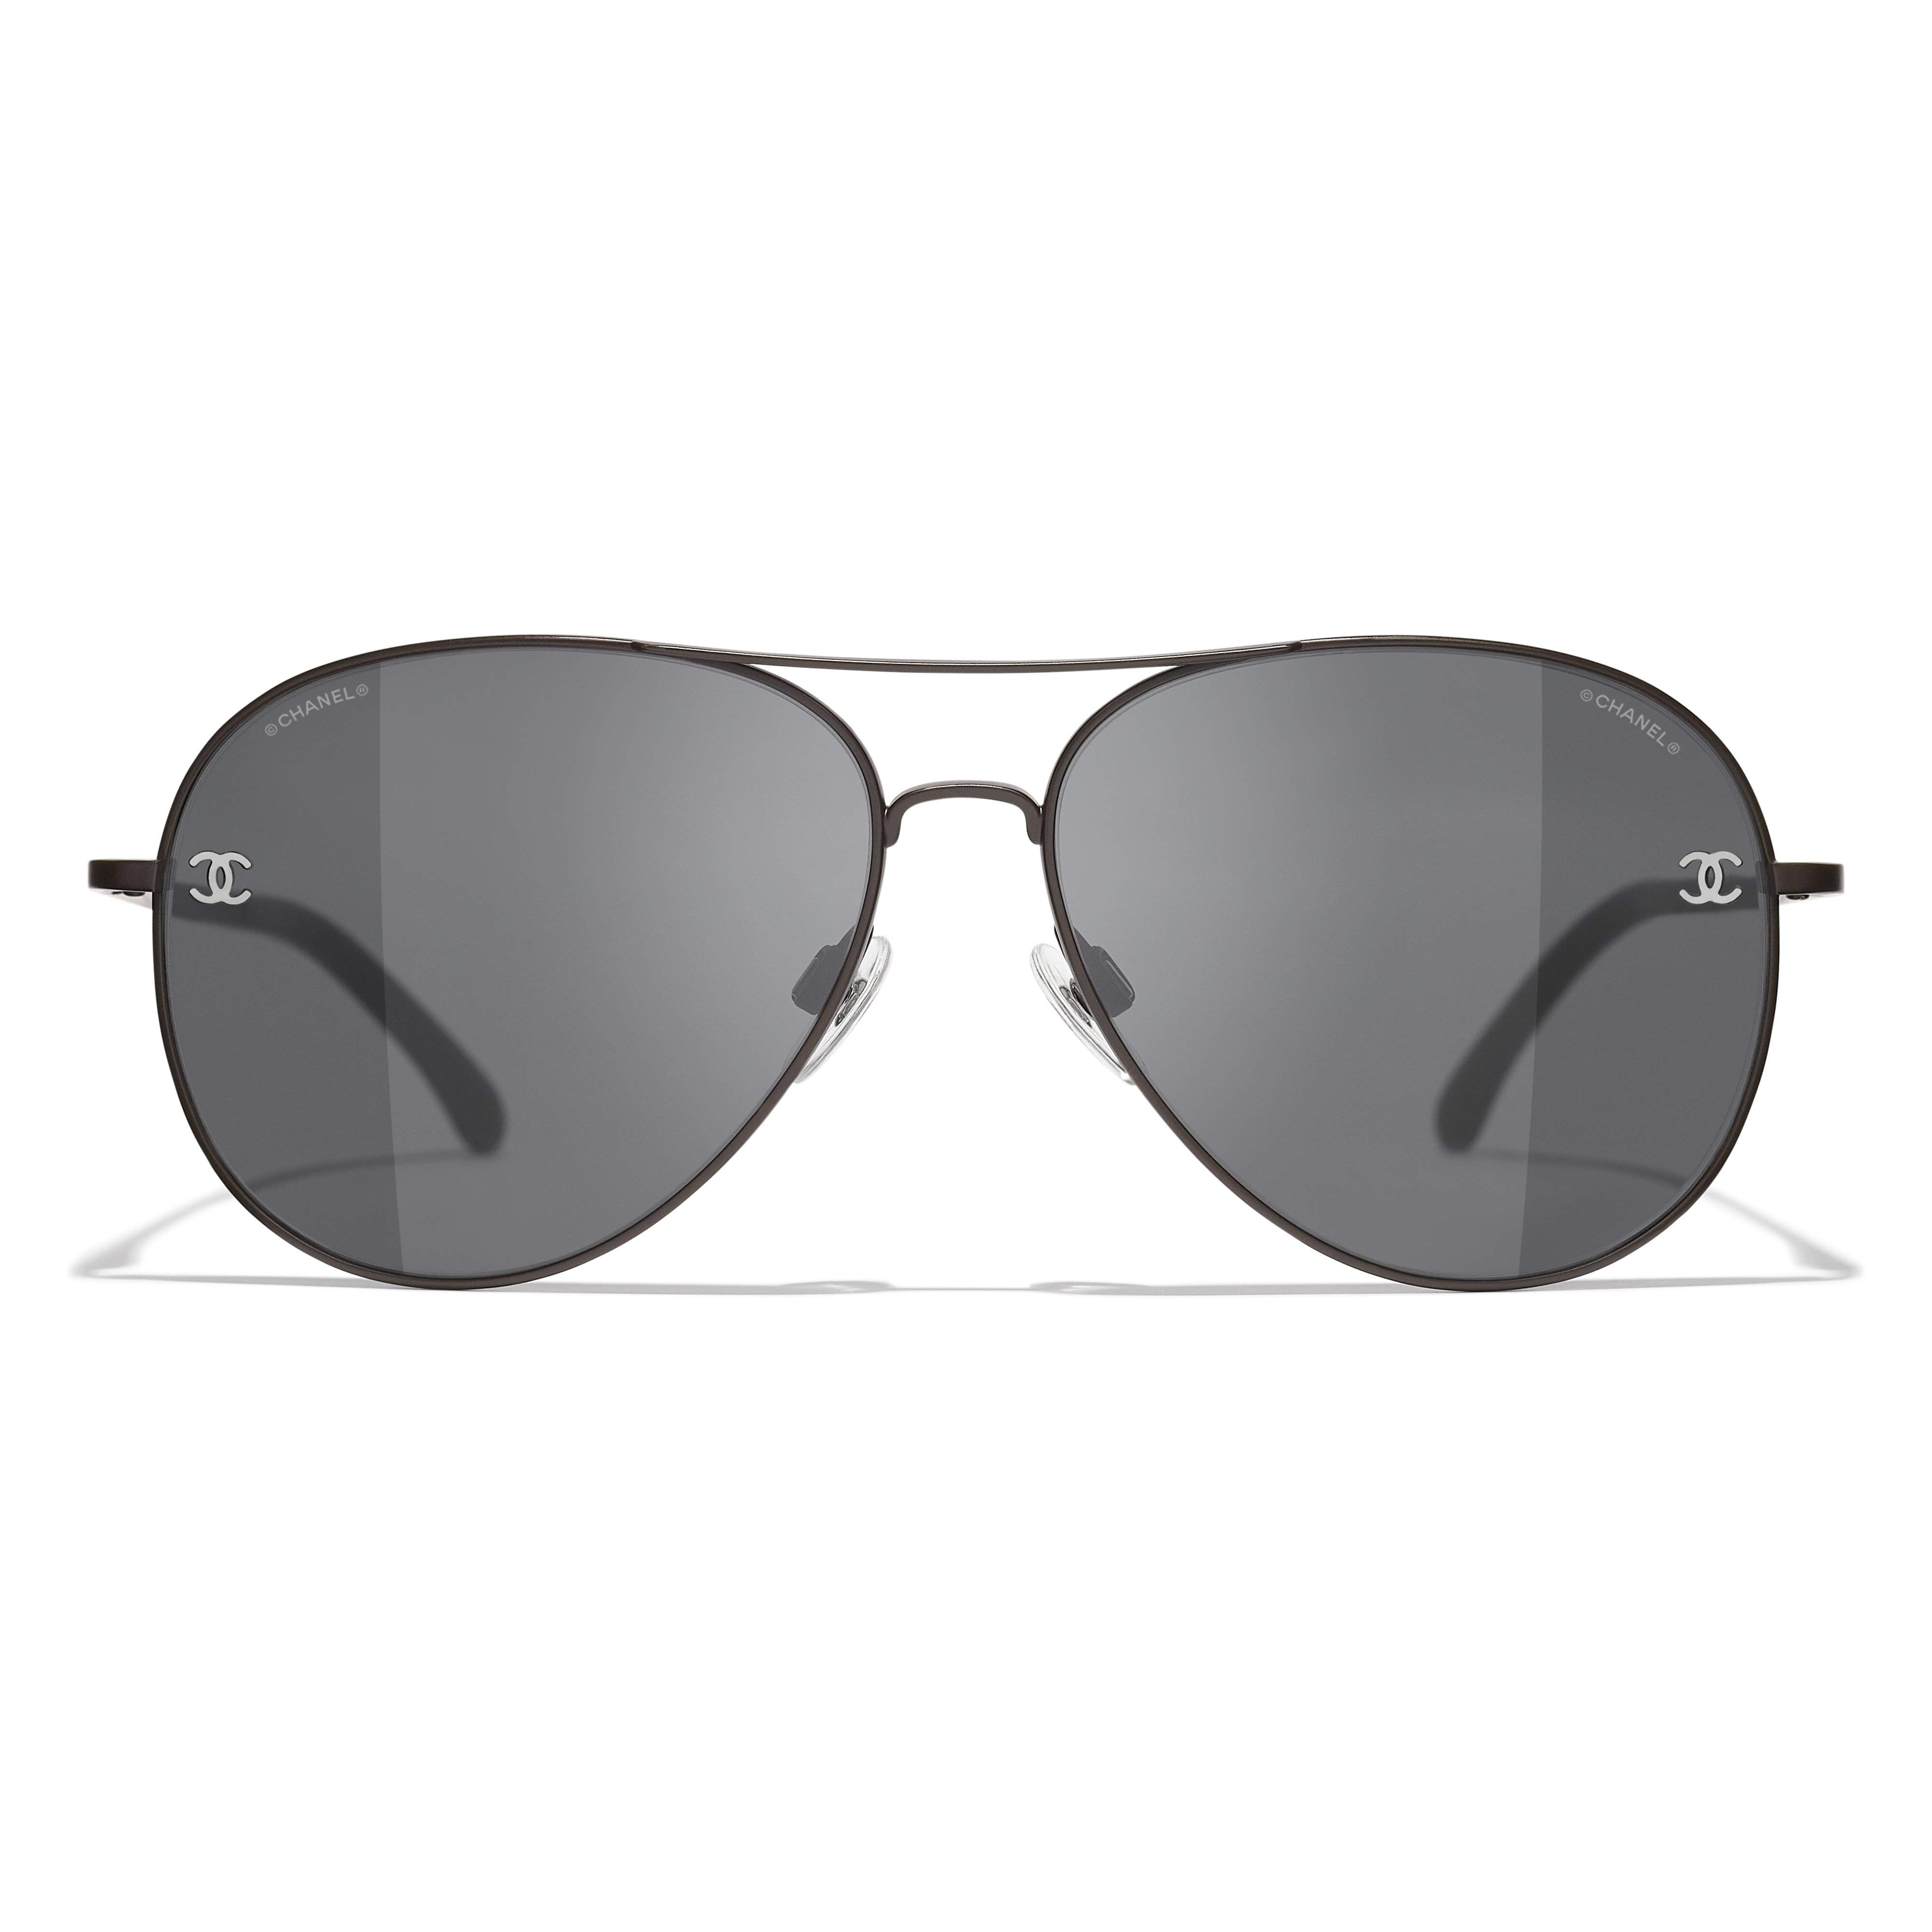 Sunglasses Chanel CH4189TQ C112/87 59-14 Black Matte Gradient in stock, Price 175,00 €